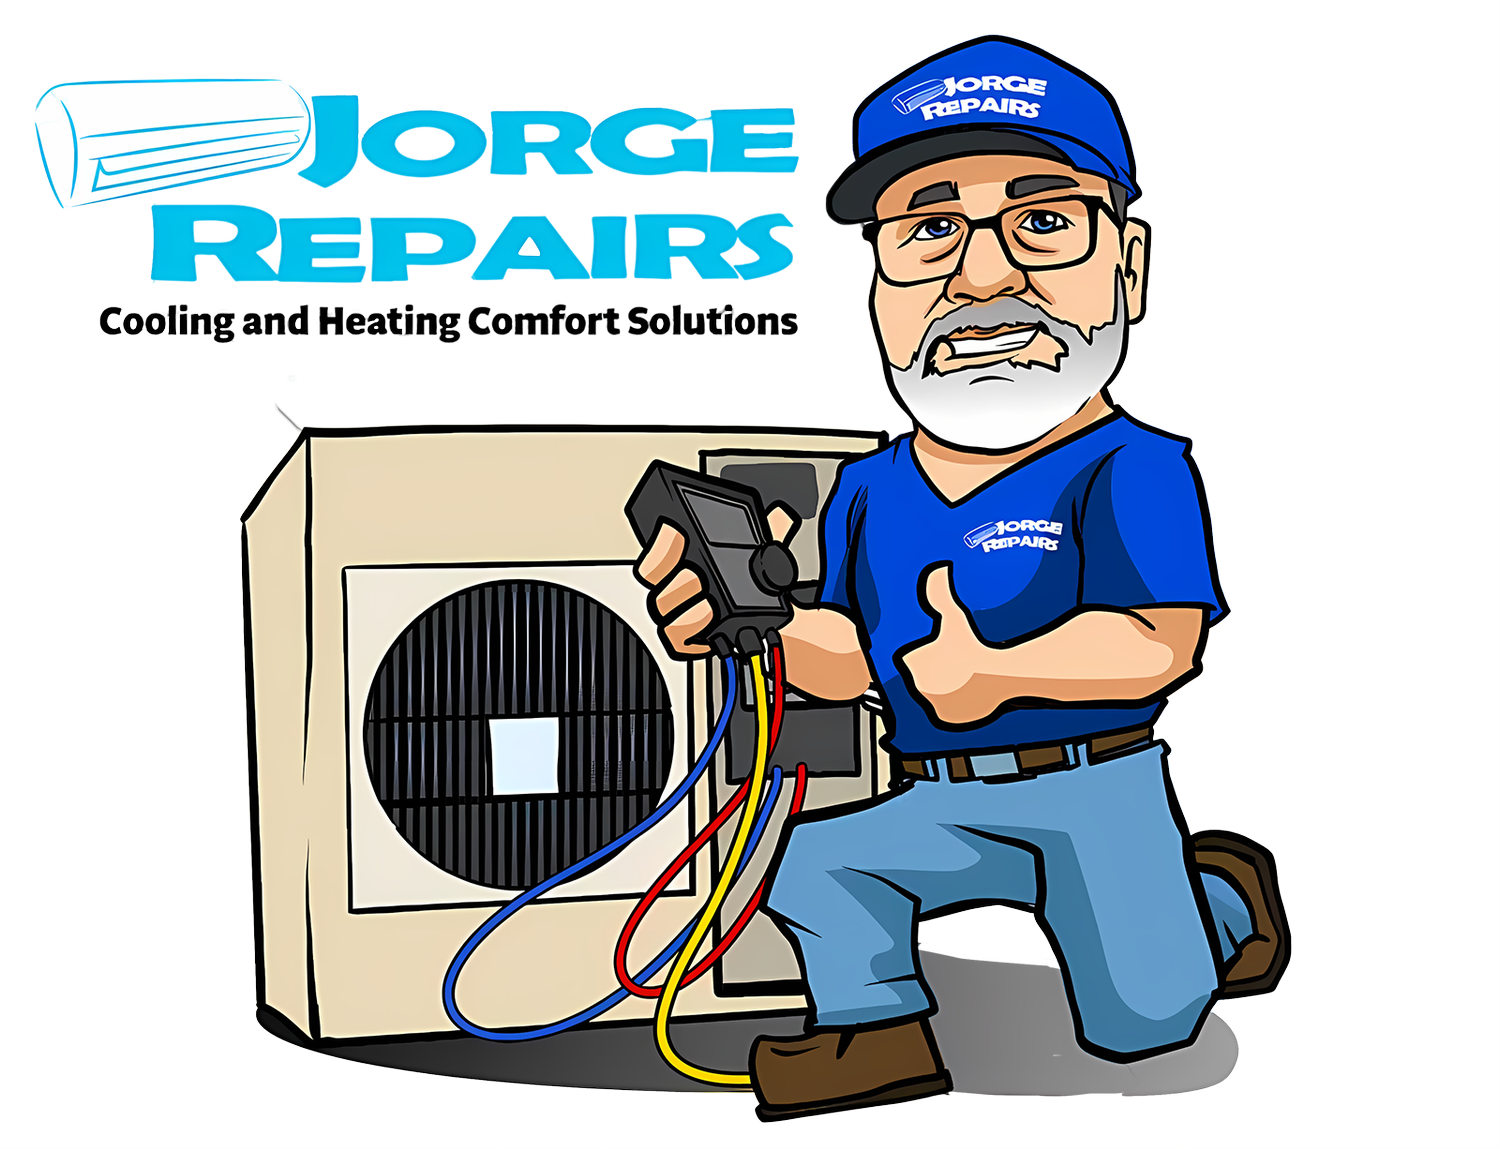 Jorge Repairs HVACR